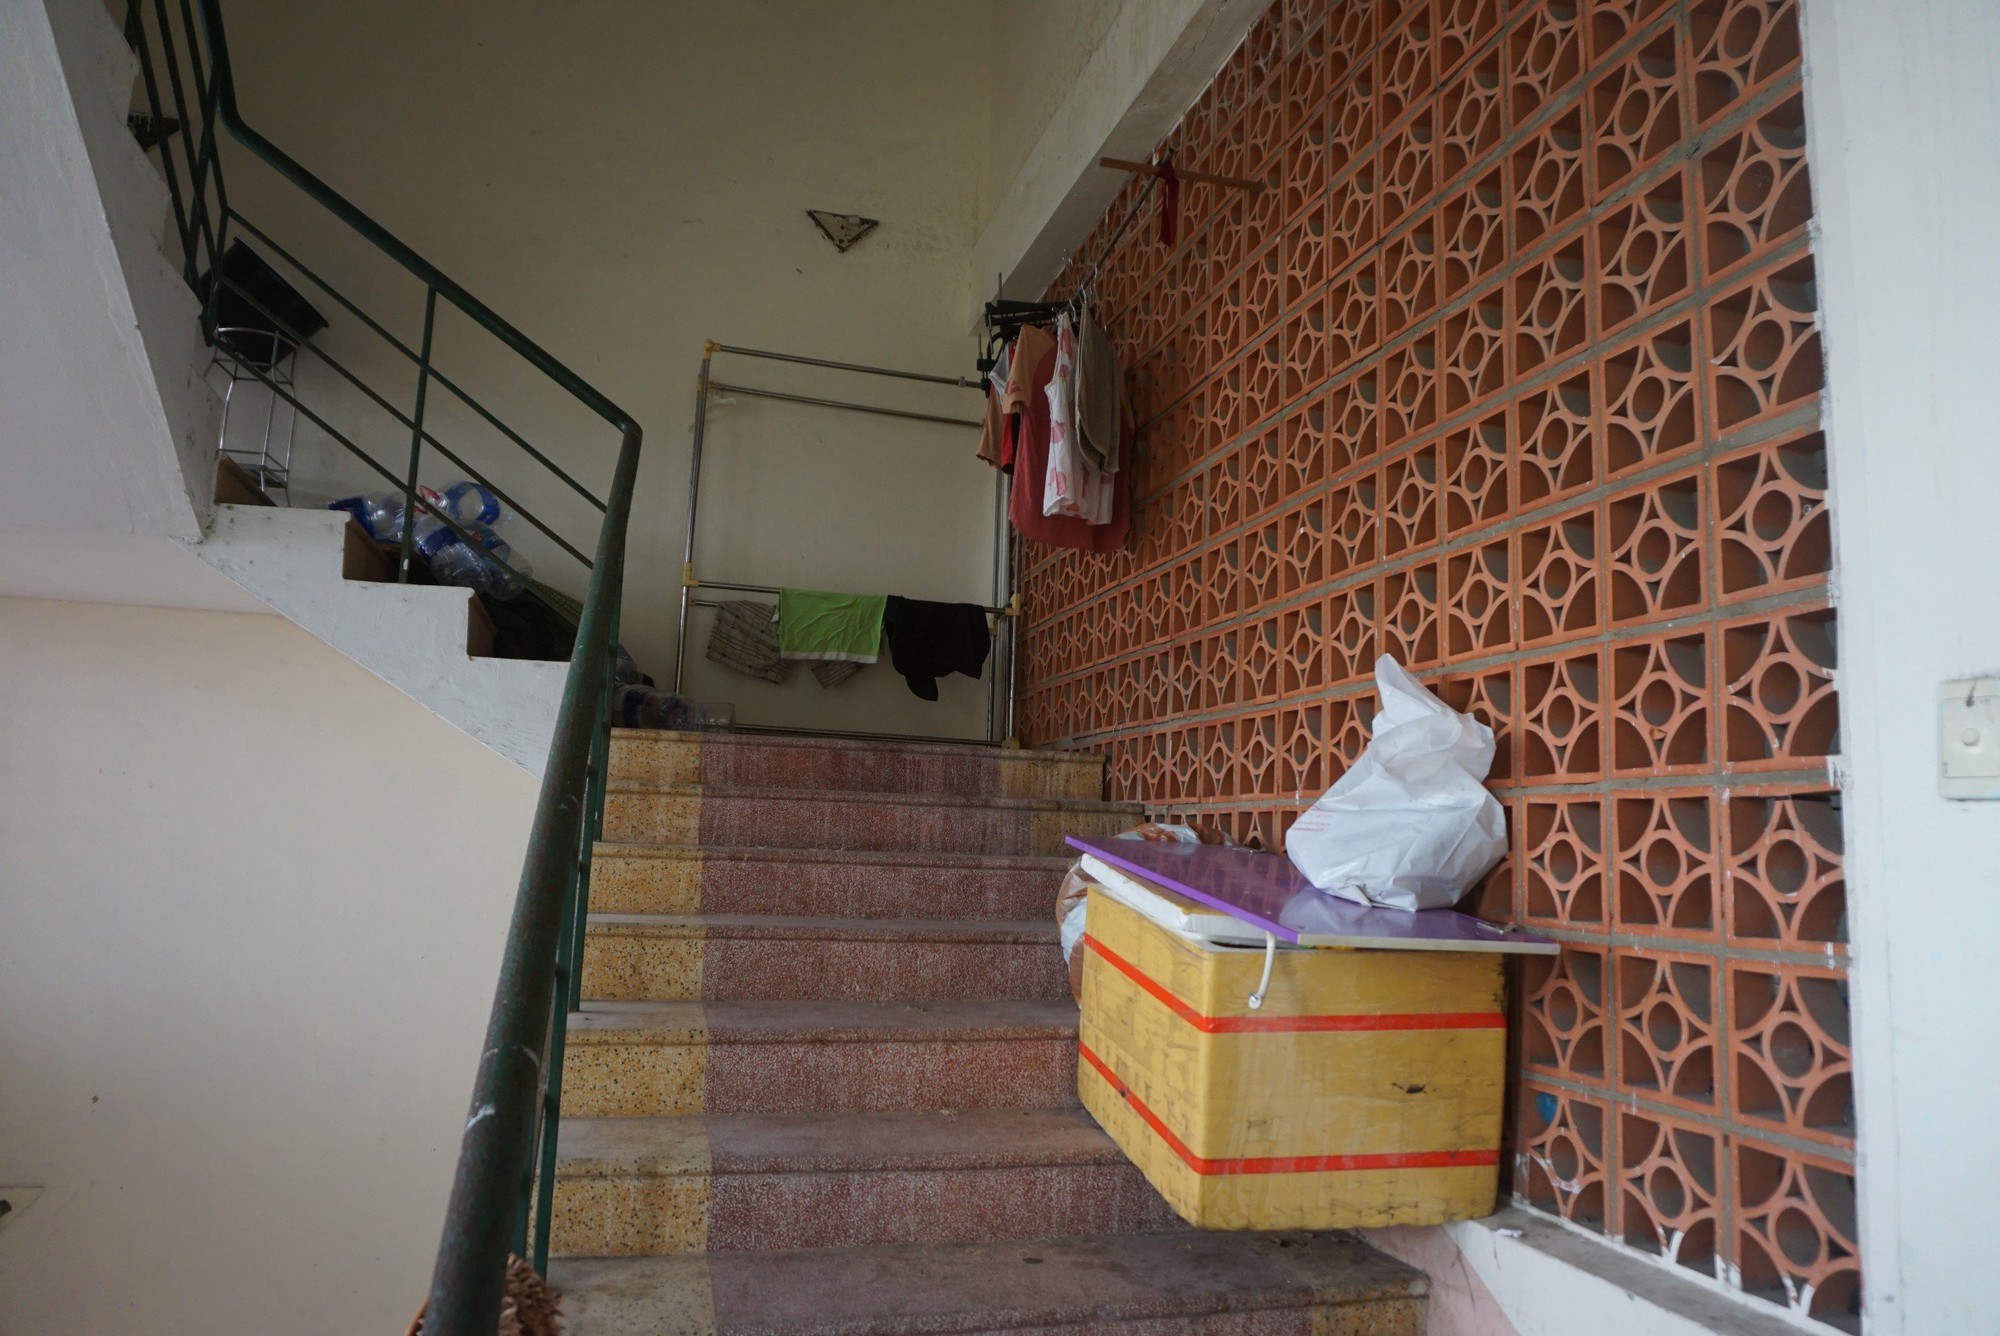 Kiểm tra PCCC của hàng ngàn chung cư, nhà trọ tại Đà Nẵng - Ảnh 4.